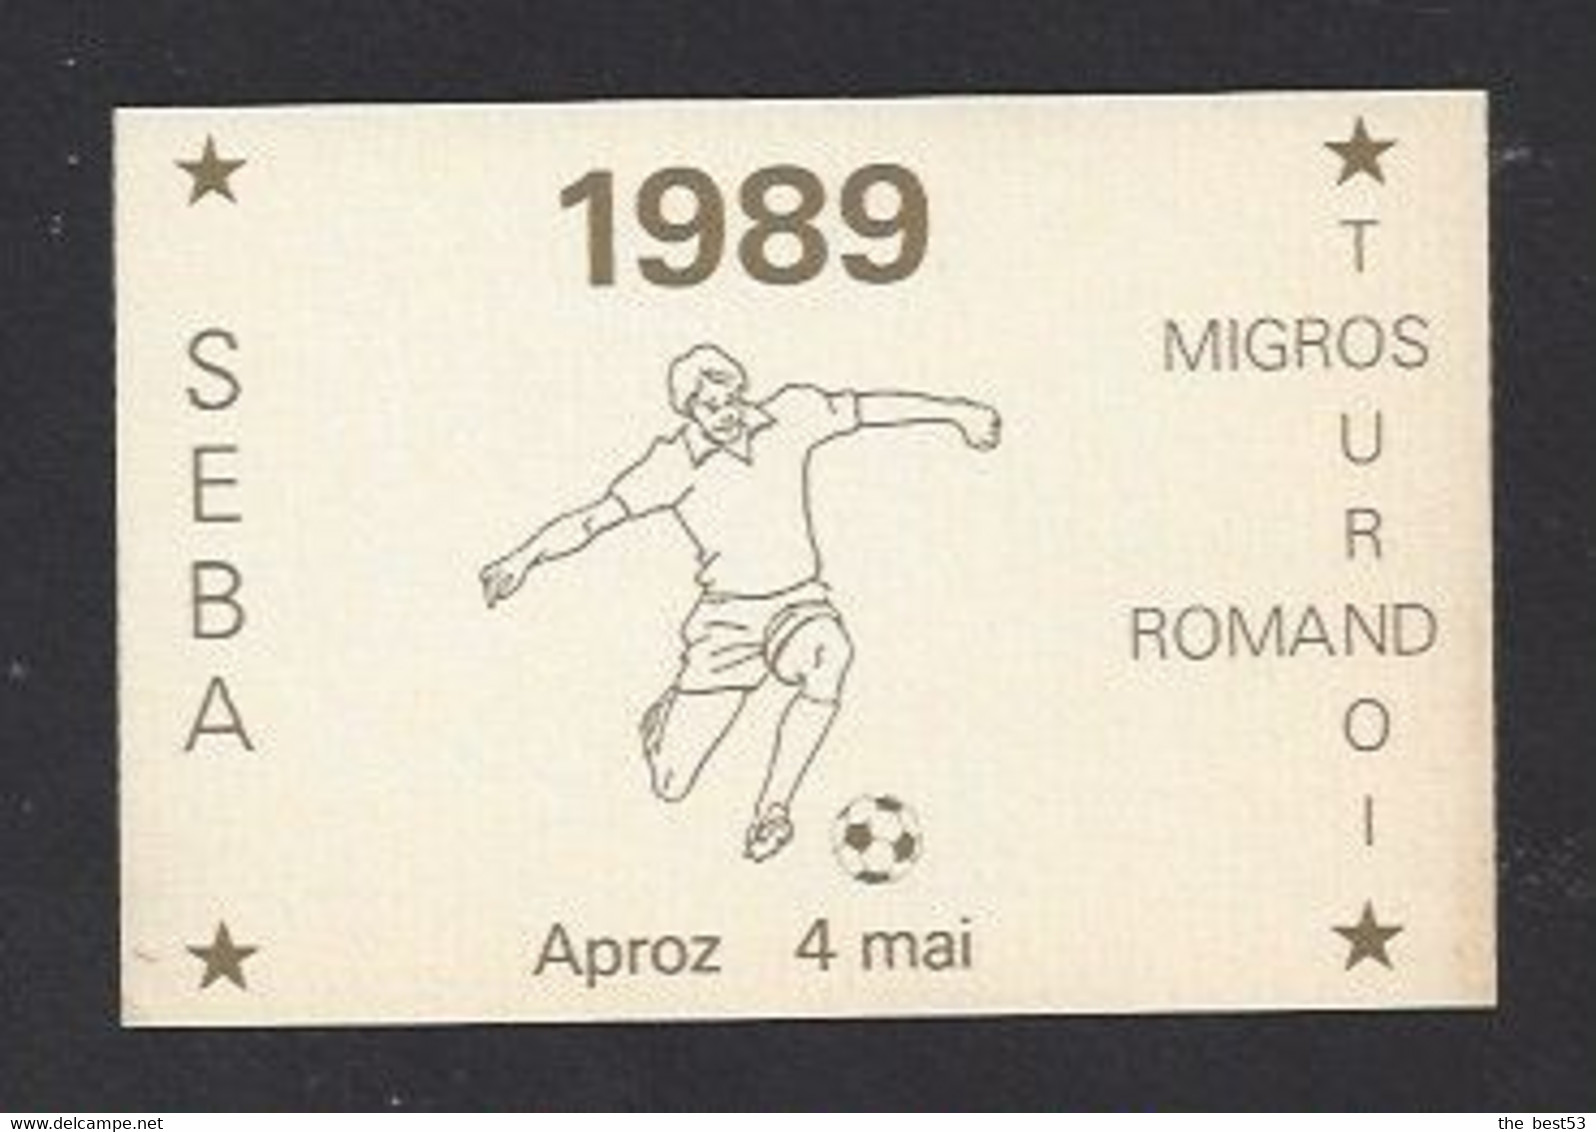 Etiquette De Vin -  Seba  -  Migros Tournois Romand 4 Mai 1989   (suisse) -  Thème Foot - Soccer